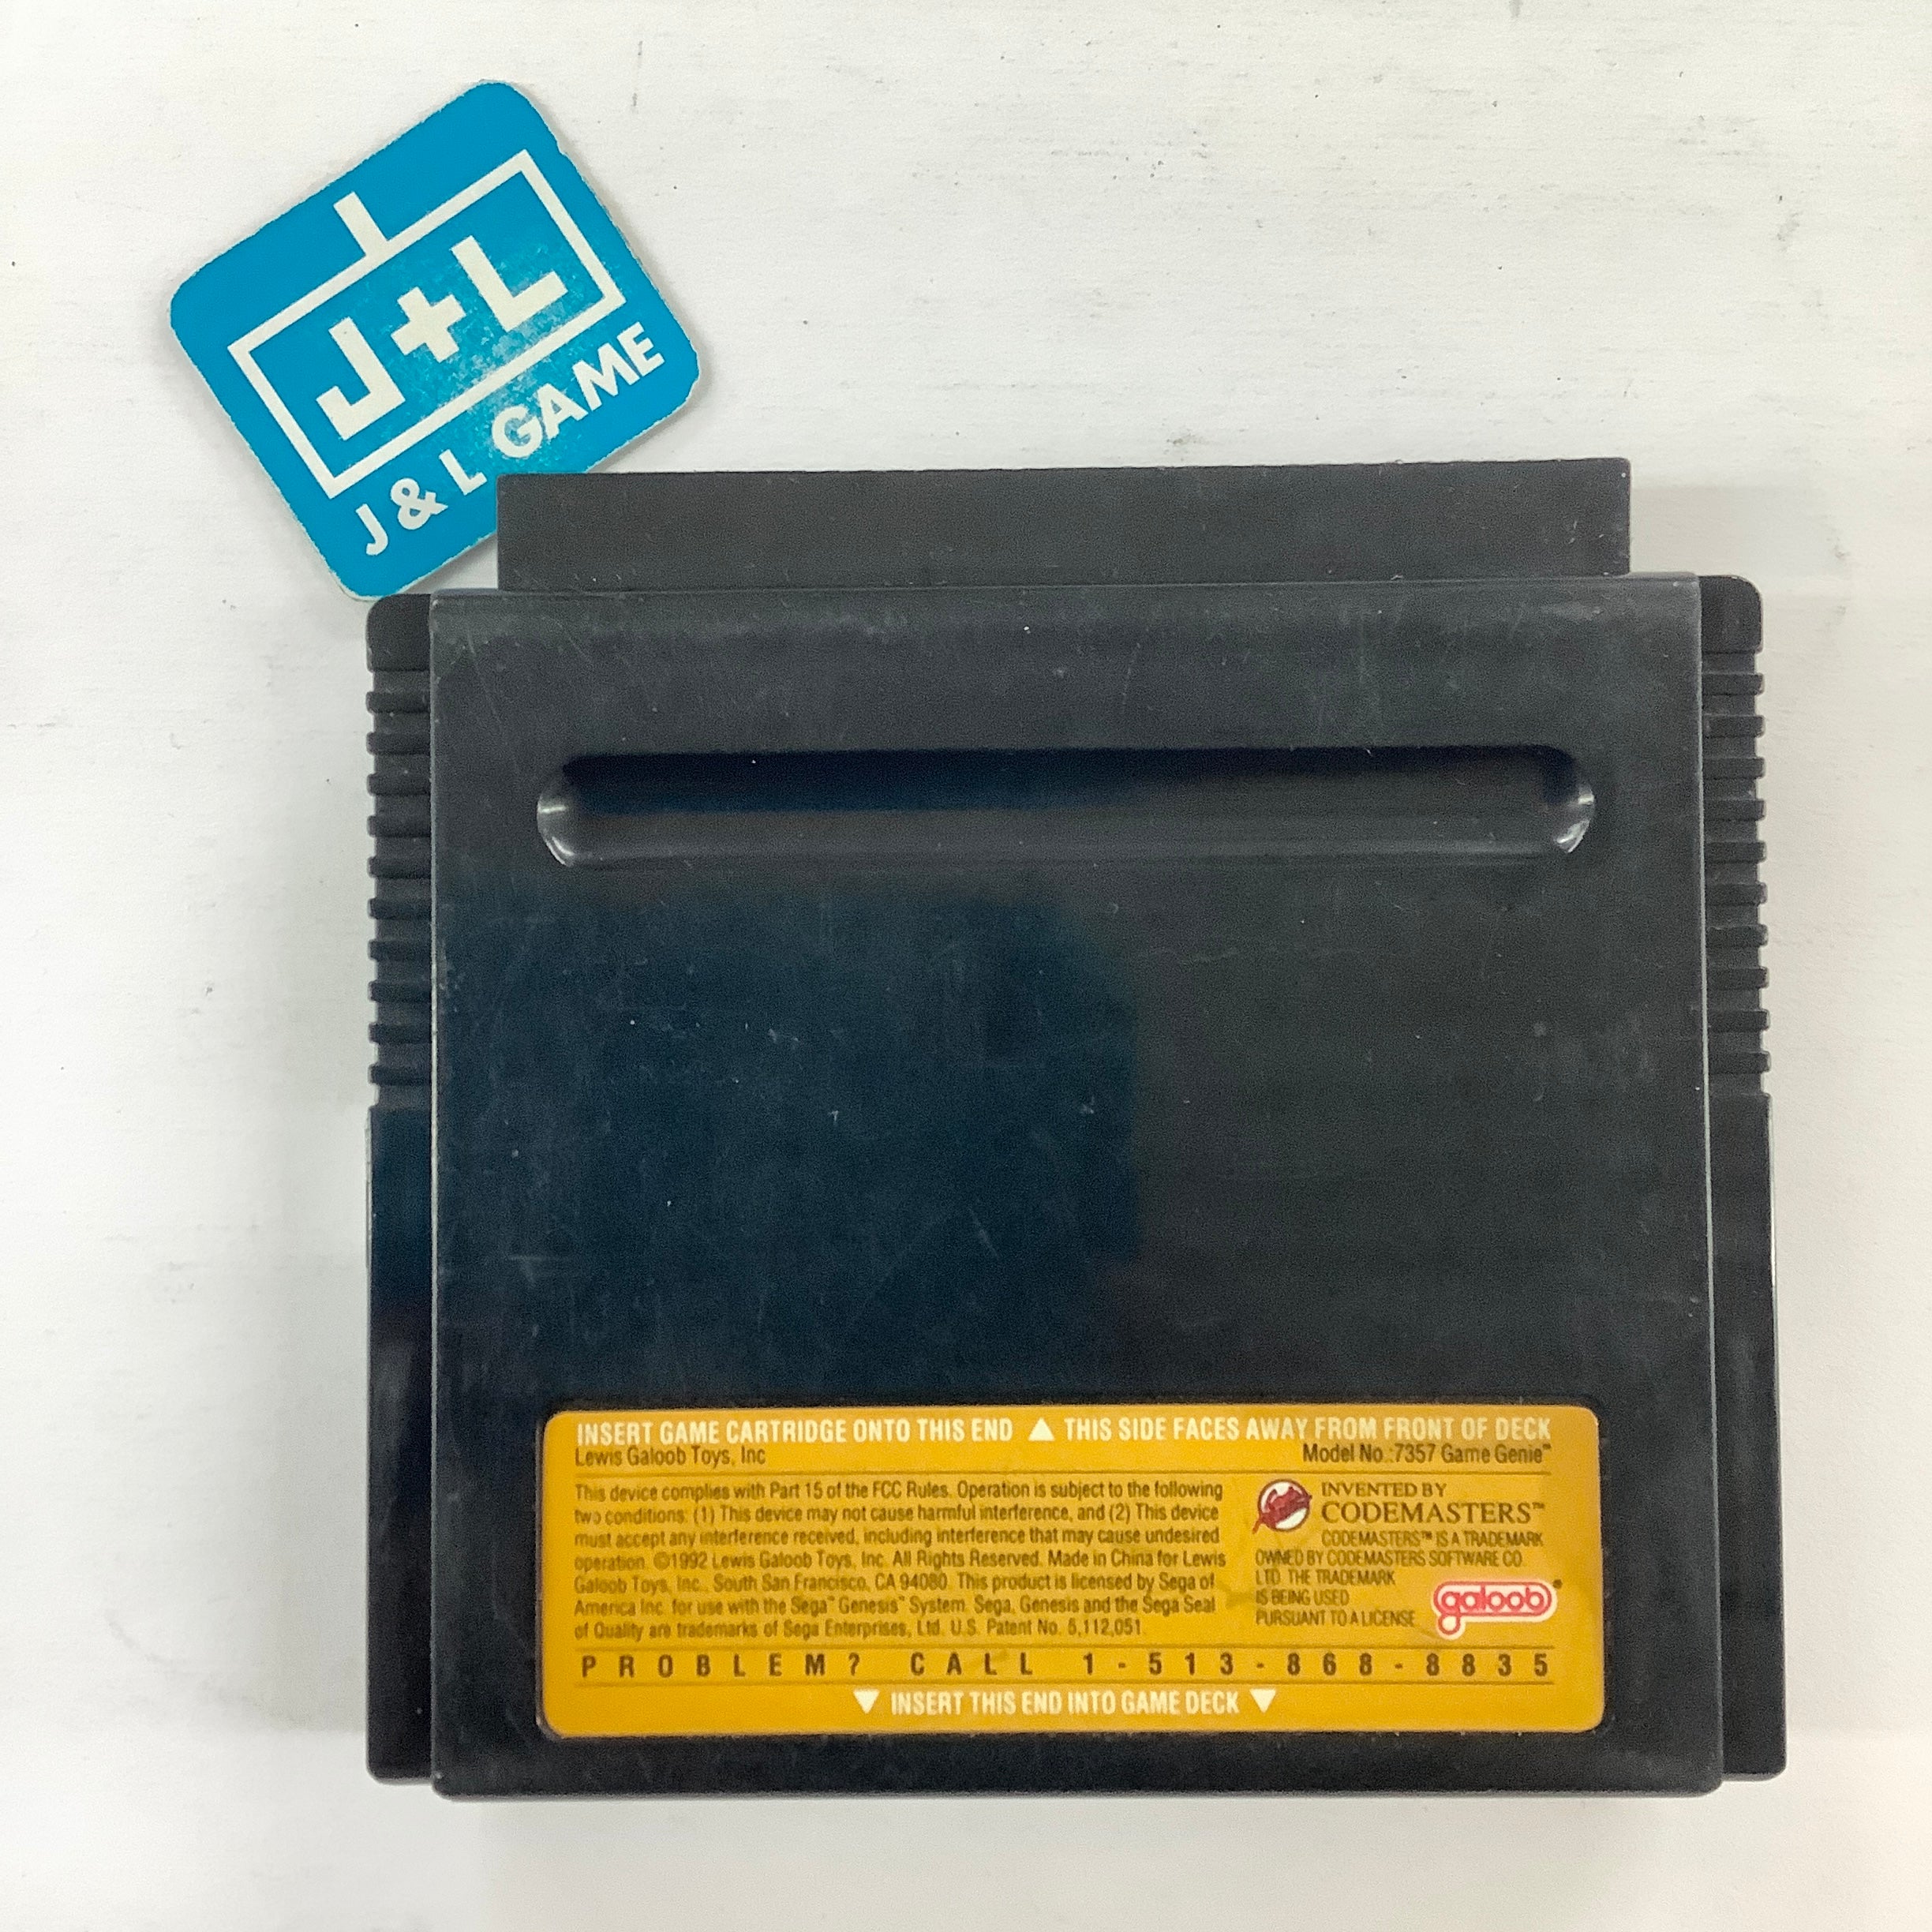 Game Genie Video Game Enhancer - (SG) Sega Genesis [Pre-Owned] Accessories Codemasters   